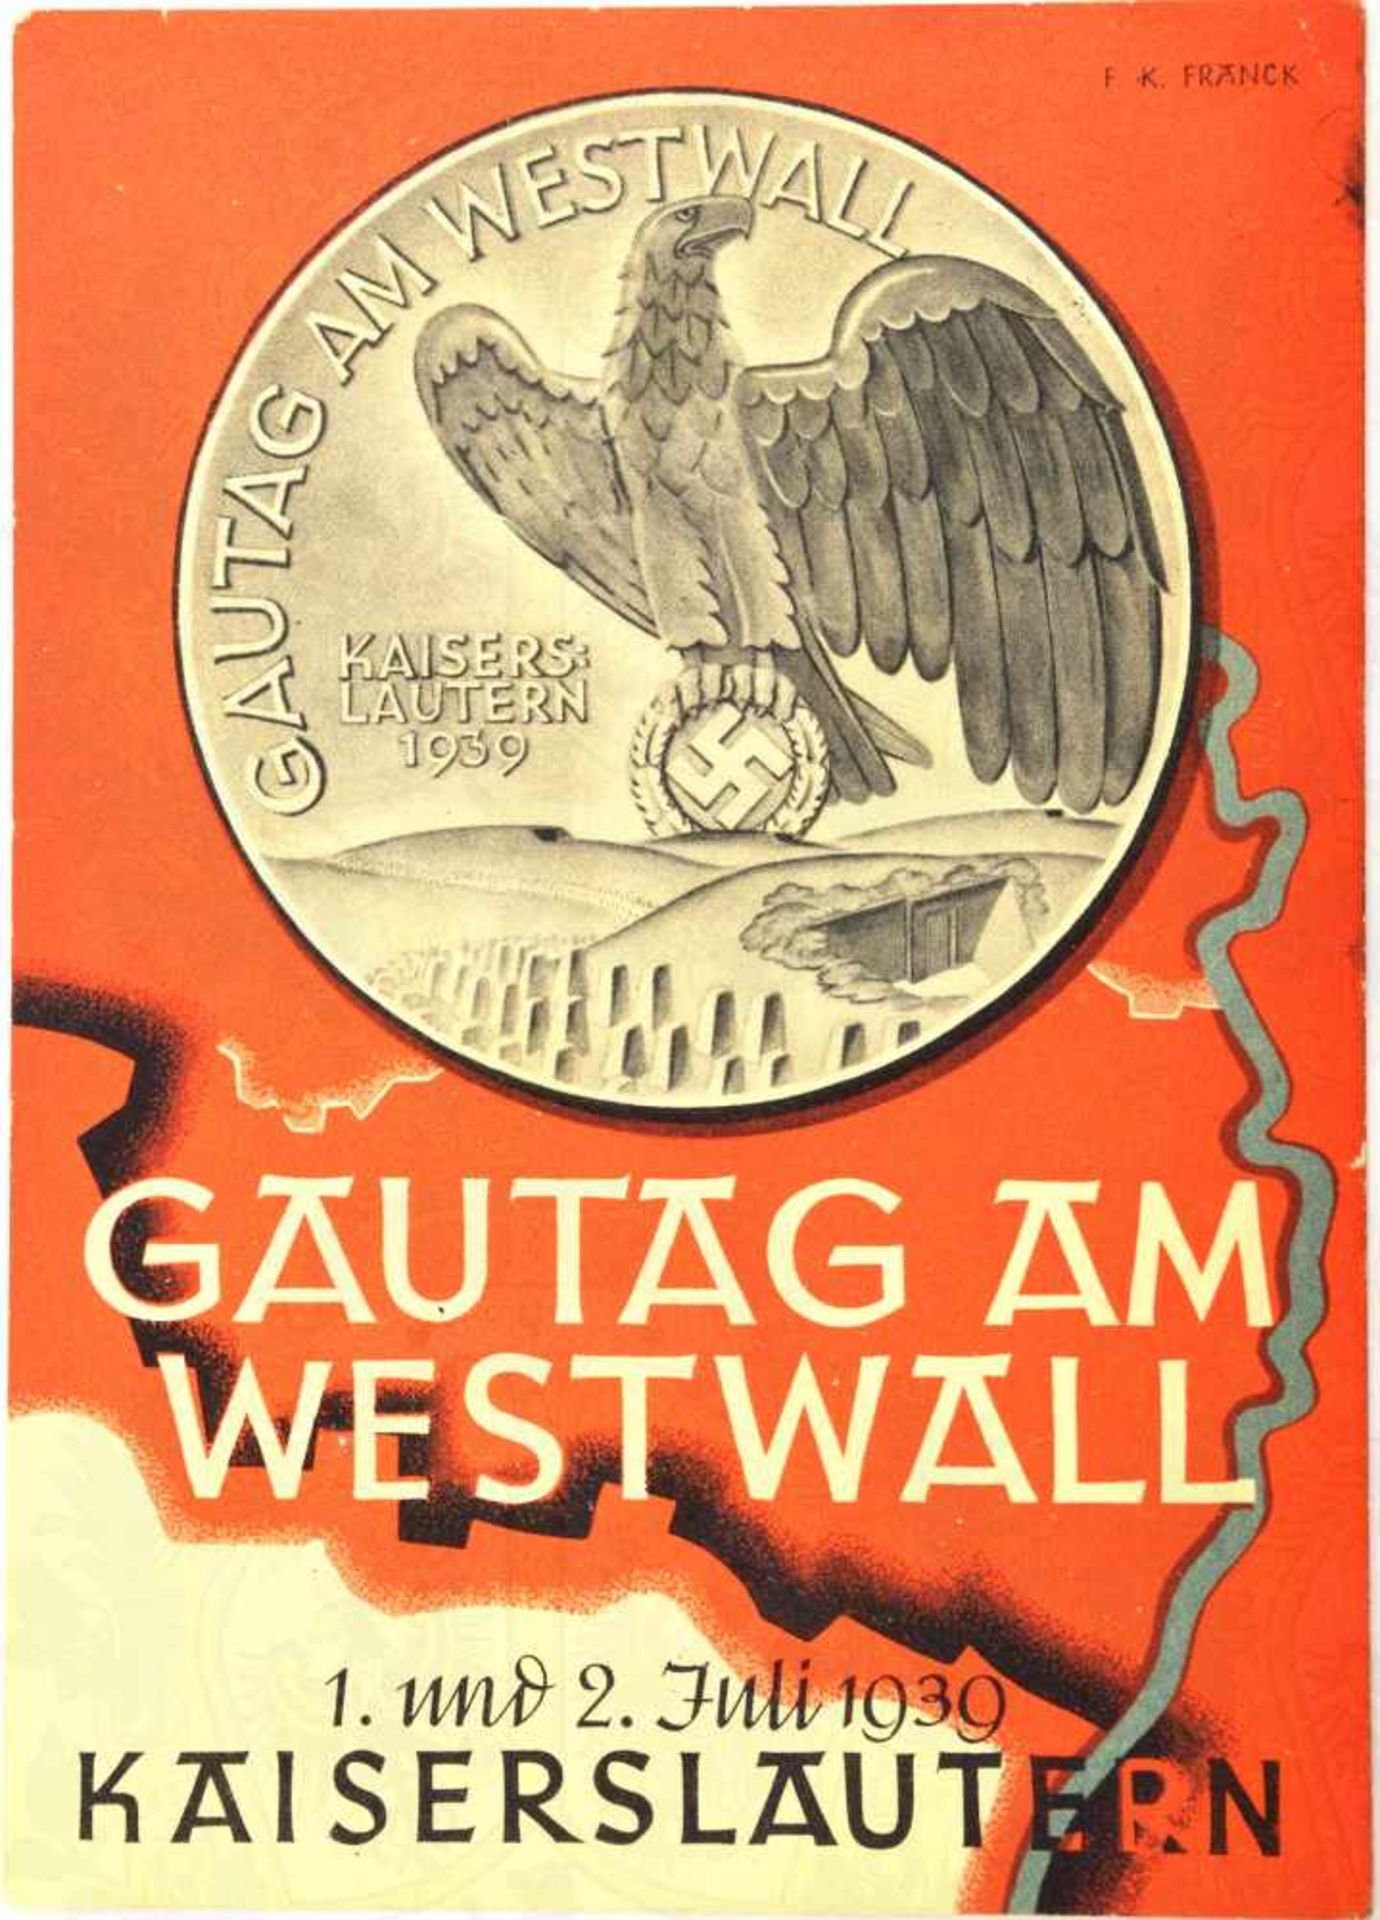 GAUTAG AM WESTWALL KAISERSLAUTERN 1939, farb. Propaganda-AK nach Zeichnung v. F.K. Franck,